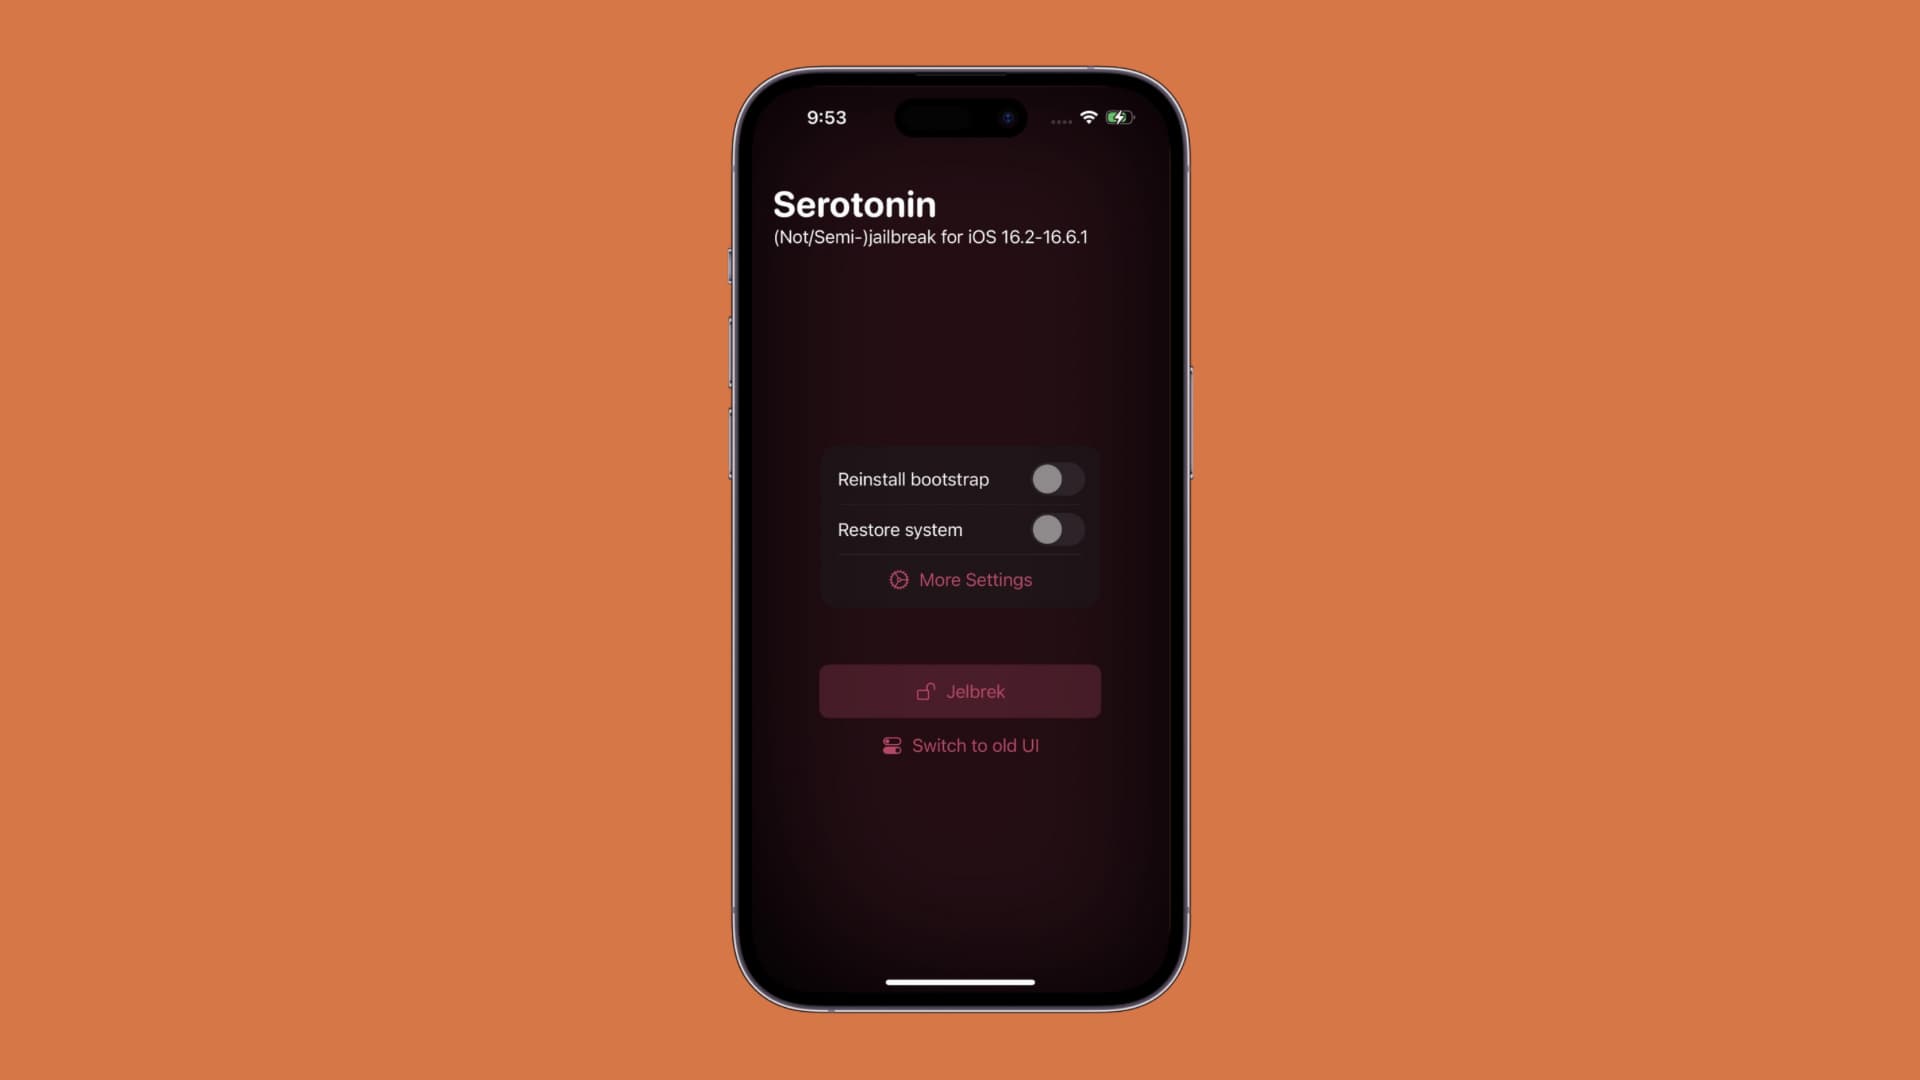 How to install the Serotonin “semi-jailbreak” on iOS 16.0-16.6.1